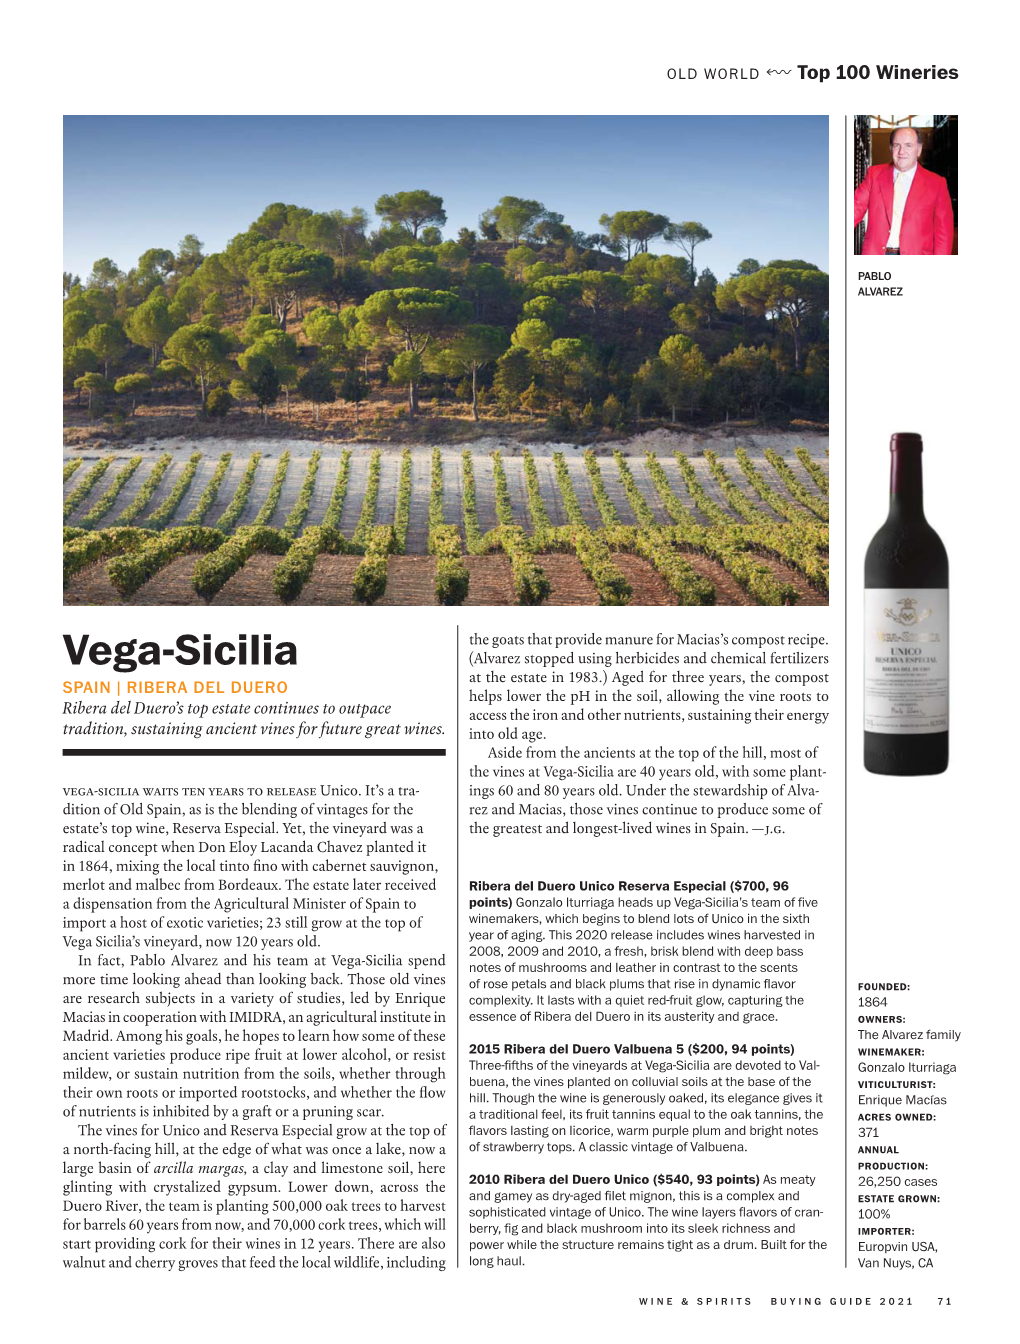 Vega-Sicilia